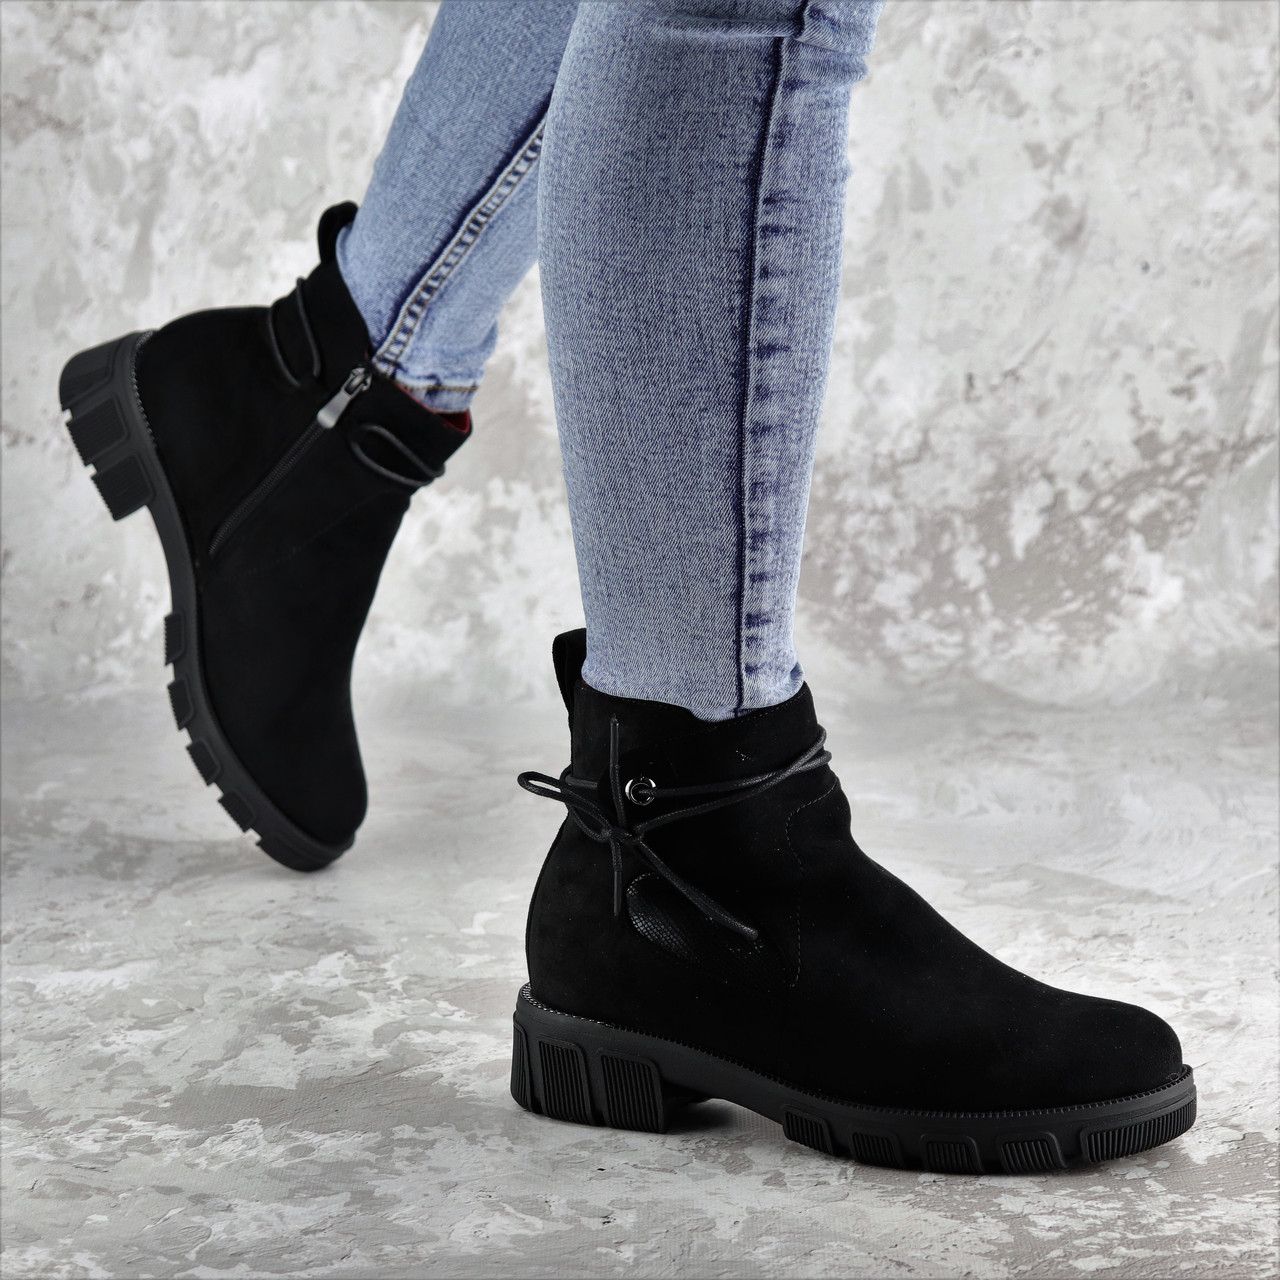 

Ботинки женские зимние Fashion Kuvic 2314 36 размер 23,5 см Черный